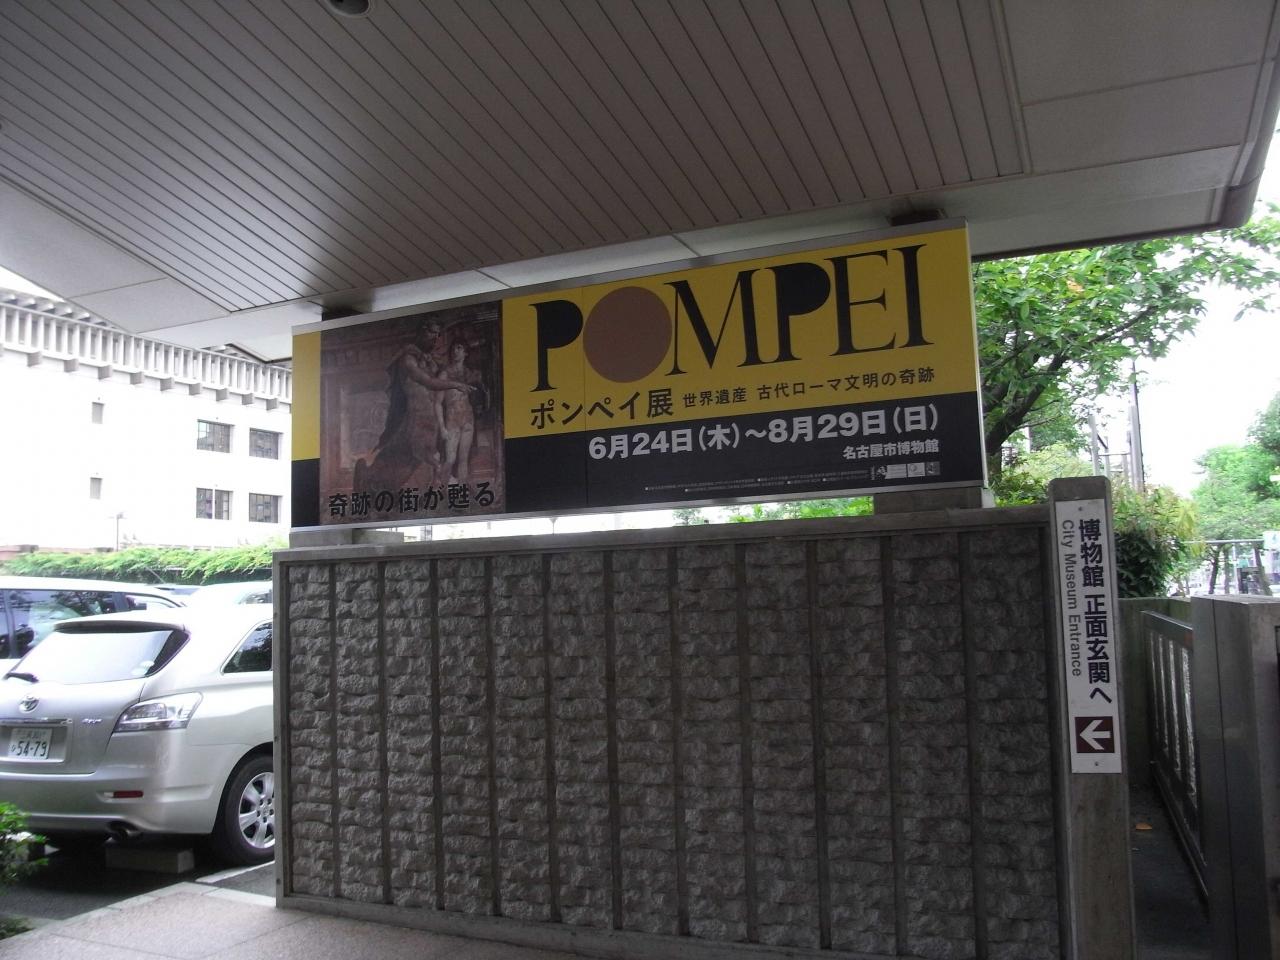 ちょっとお出掛け Pompei展へ行って見よう 名古屋 愛知県 の旅行記 ブログ By Cobraさん フォートラベル